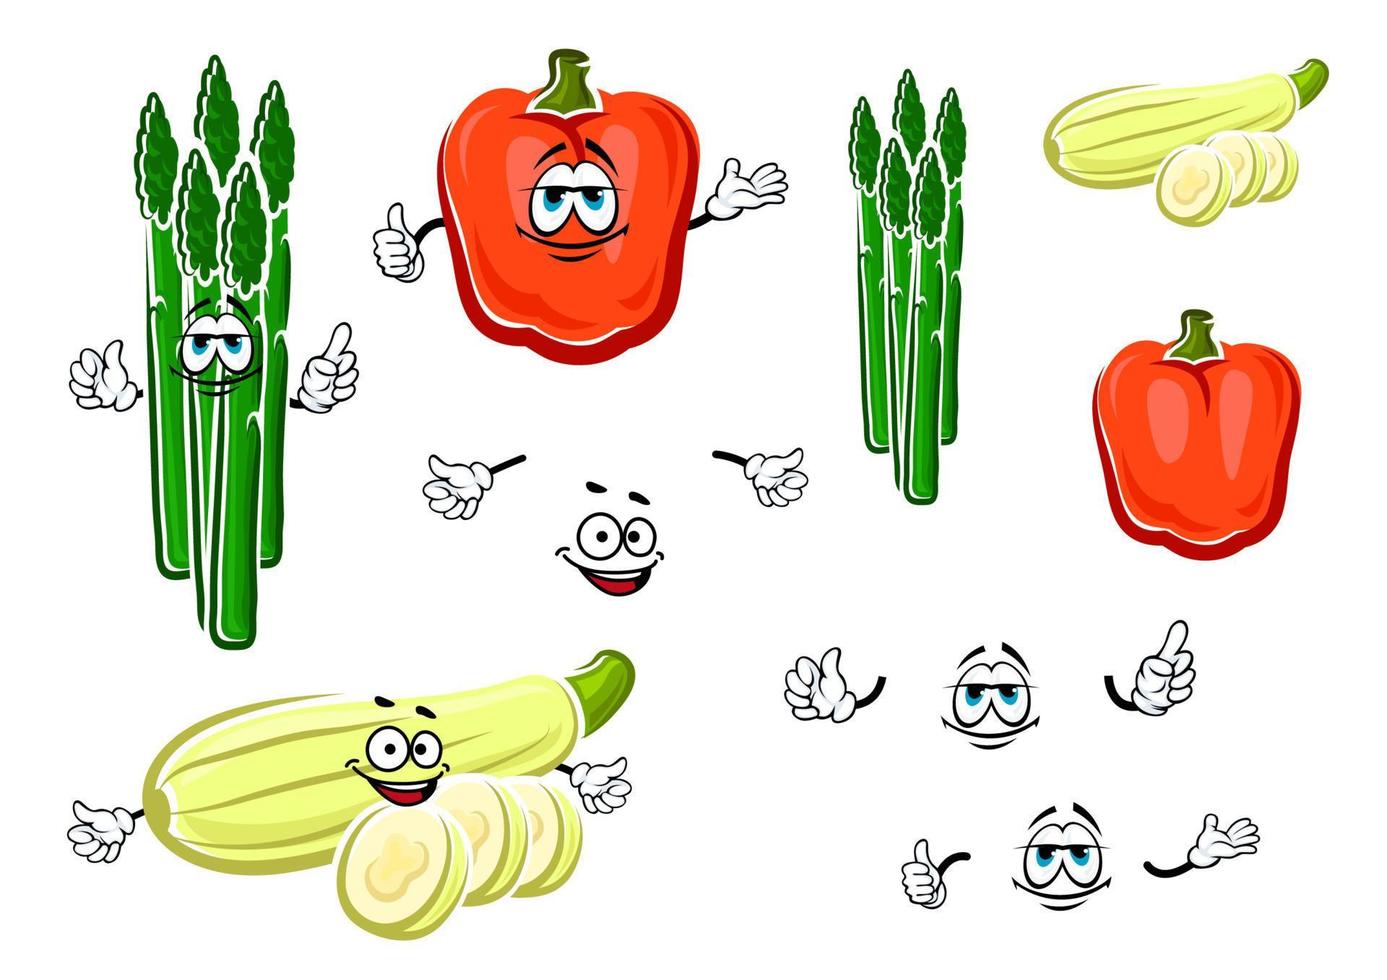 klok peper, asperges en courgette groenten vector